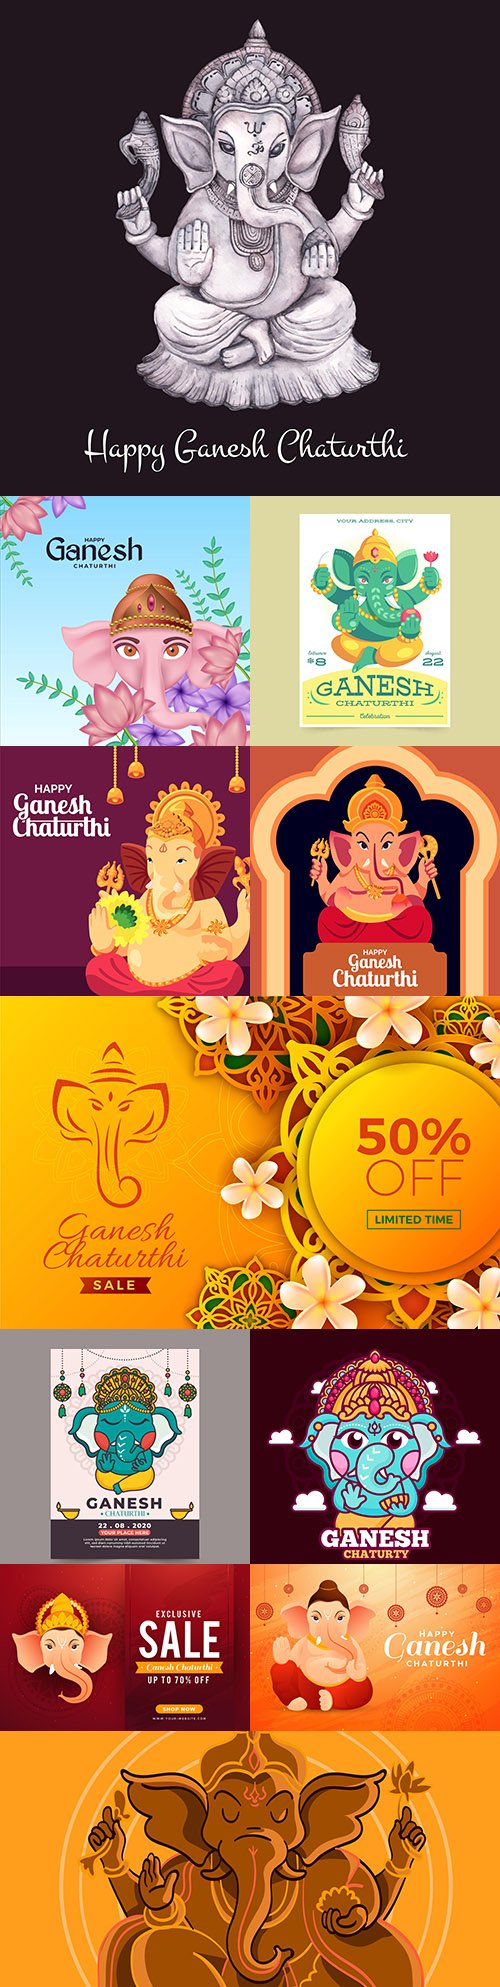 Ganesha Chaturthi Indian festival design illustration